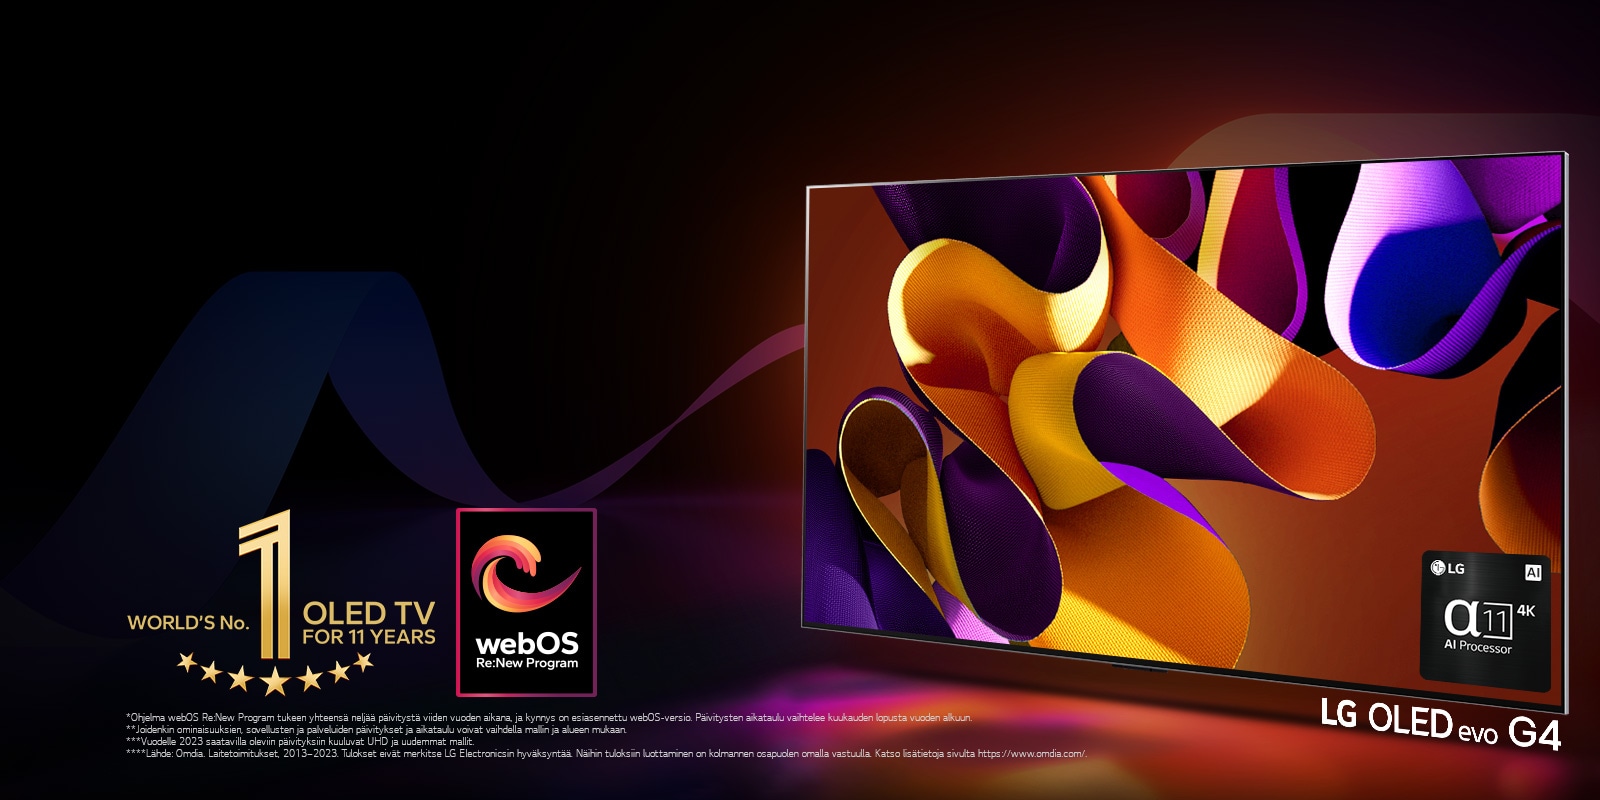 LG OLED evo TV G4, jonka näytöllä on abstrakti, värikäs taideteos mustaa taustaa vasten, jossa on hienovaraisia väripyörteitä. Näytöstä säteilee valoa luoden värikkäitä varjoja. Alpha 11 AI Processor 4K televisioruudun oikeassa alakulmassa. Kuvassa on "World's number 1 OLED TV for 11 Years" (Maailman ykkönen OLED TV 11 vuoden ajan) -tunnus ja "webOS Re:New Program" -logo. Vastuuvapauslausekkeessa lukee: ”Ohjelma webOS Re:New Program tukee yhteensä neljää päivitystä viiden vuoden aikana, ja kynnys on esiasennettu webOS-versio. Päivitysten aikataulu vaihtelee kuukauden lopusta vuoden alkuun.”  ”Joidenkin ominaisuuksien, sovellusten ja palveluiden päivitykset ja aikataulu voivat vaihdella mallin ja alueen mukaan.”  ”Vuodelle 2023 saatavilla oleviin päivityksiin kuuluvat UHD ja uudemmat mallit.” ”Lähde: Omdia. Laitetoimitukset, 2013–2023. Tulokset eivät merkitse LG Electronicsin hyväksyntää. Näihin tuloksiin luottaminen on kolmannen osapuolen omalla vastuulla. Katso lisätietoja sivulta https://www.omdia.com/.”